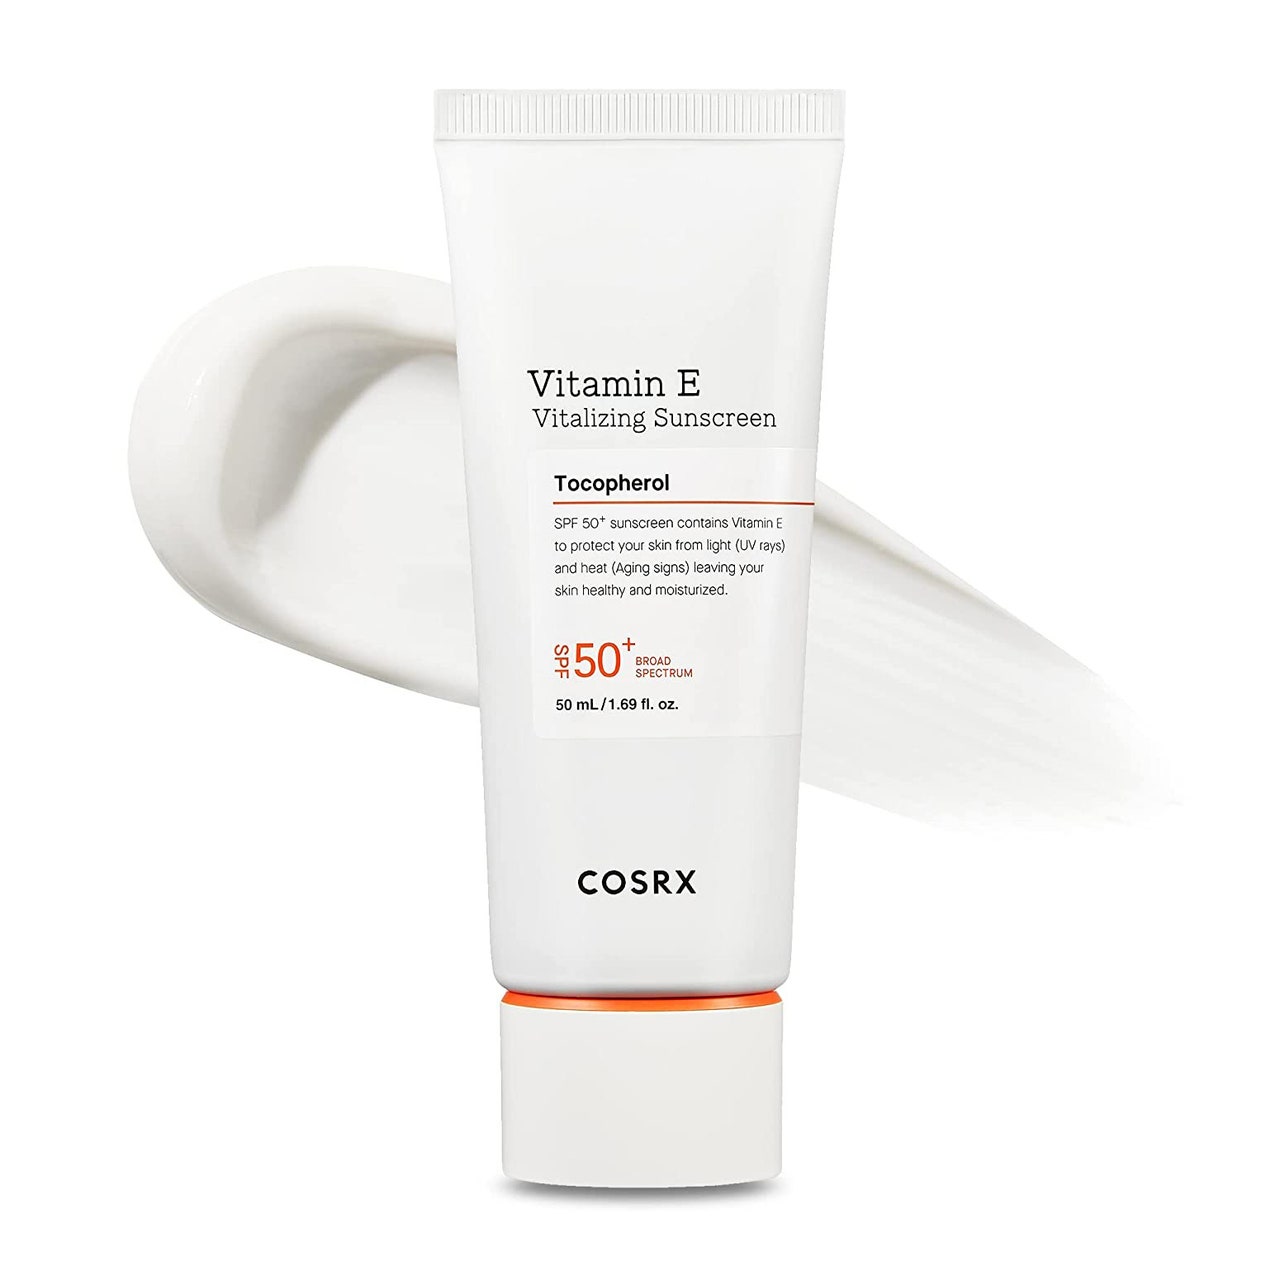 Cosrx Vitamin E SPF 50+ Daily Lightweight Sunscreen White Tube mit Sonnencreme dahinter auf weißem Hintergrund